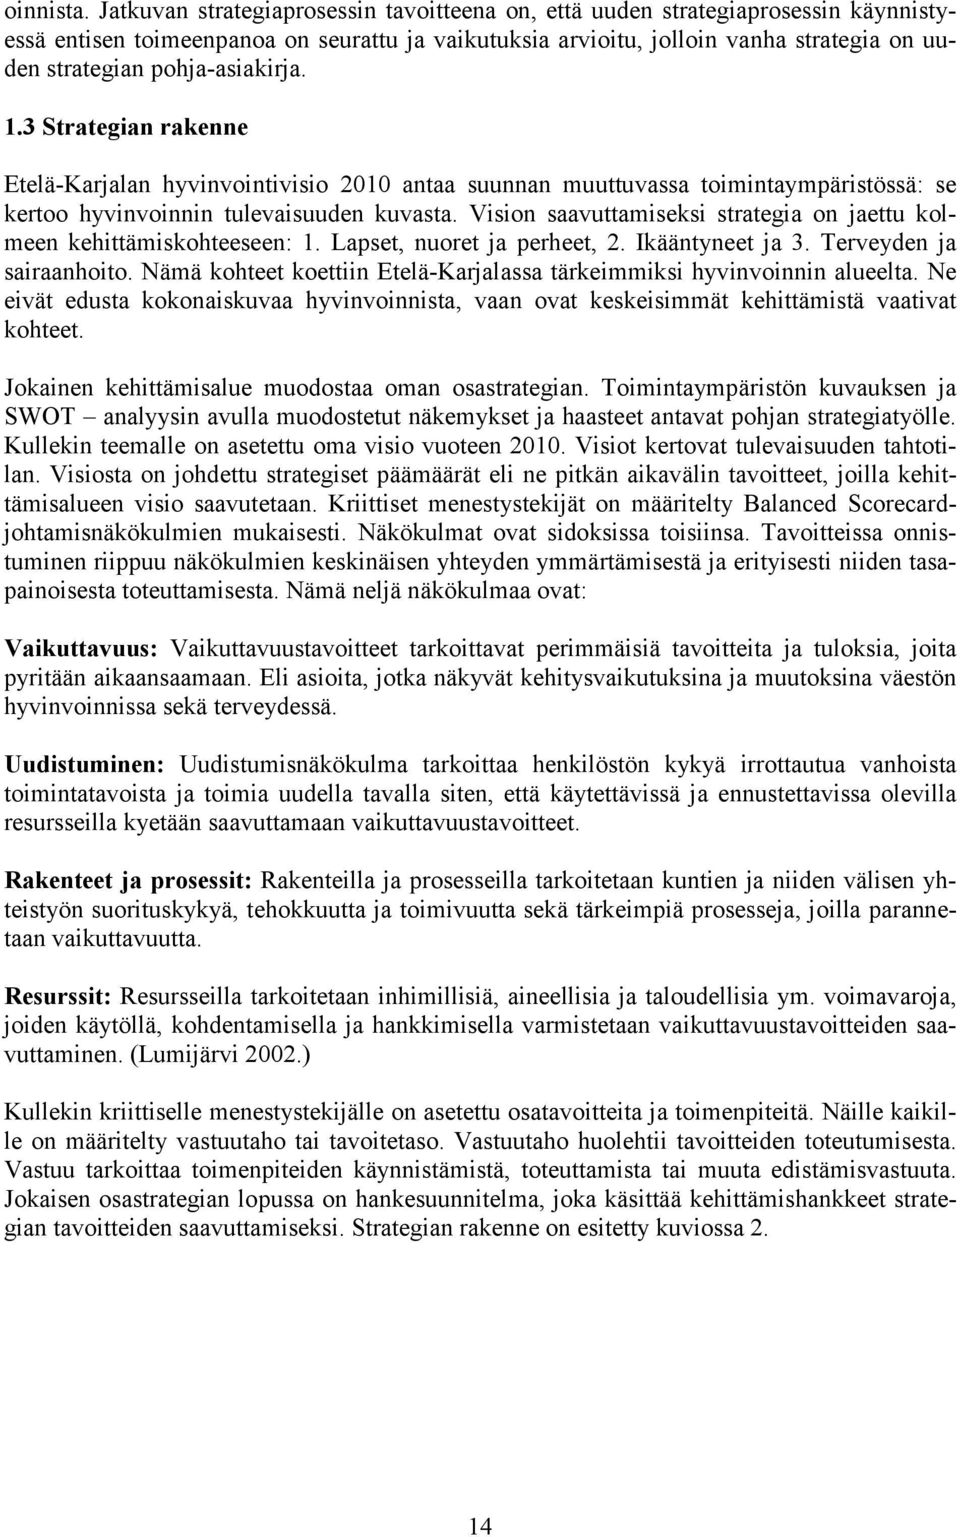 pohja-asiakirja. 1.3 Strategian rakenne Etelä-Karjalan hyvinvointivisio 2010 antaa suunnan muuttuvassa toimintaympäristössä: se kertoo hyvinvoinnin tulevaisuuden kuvasta.